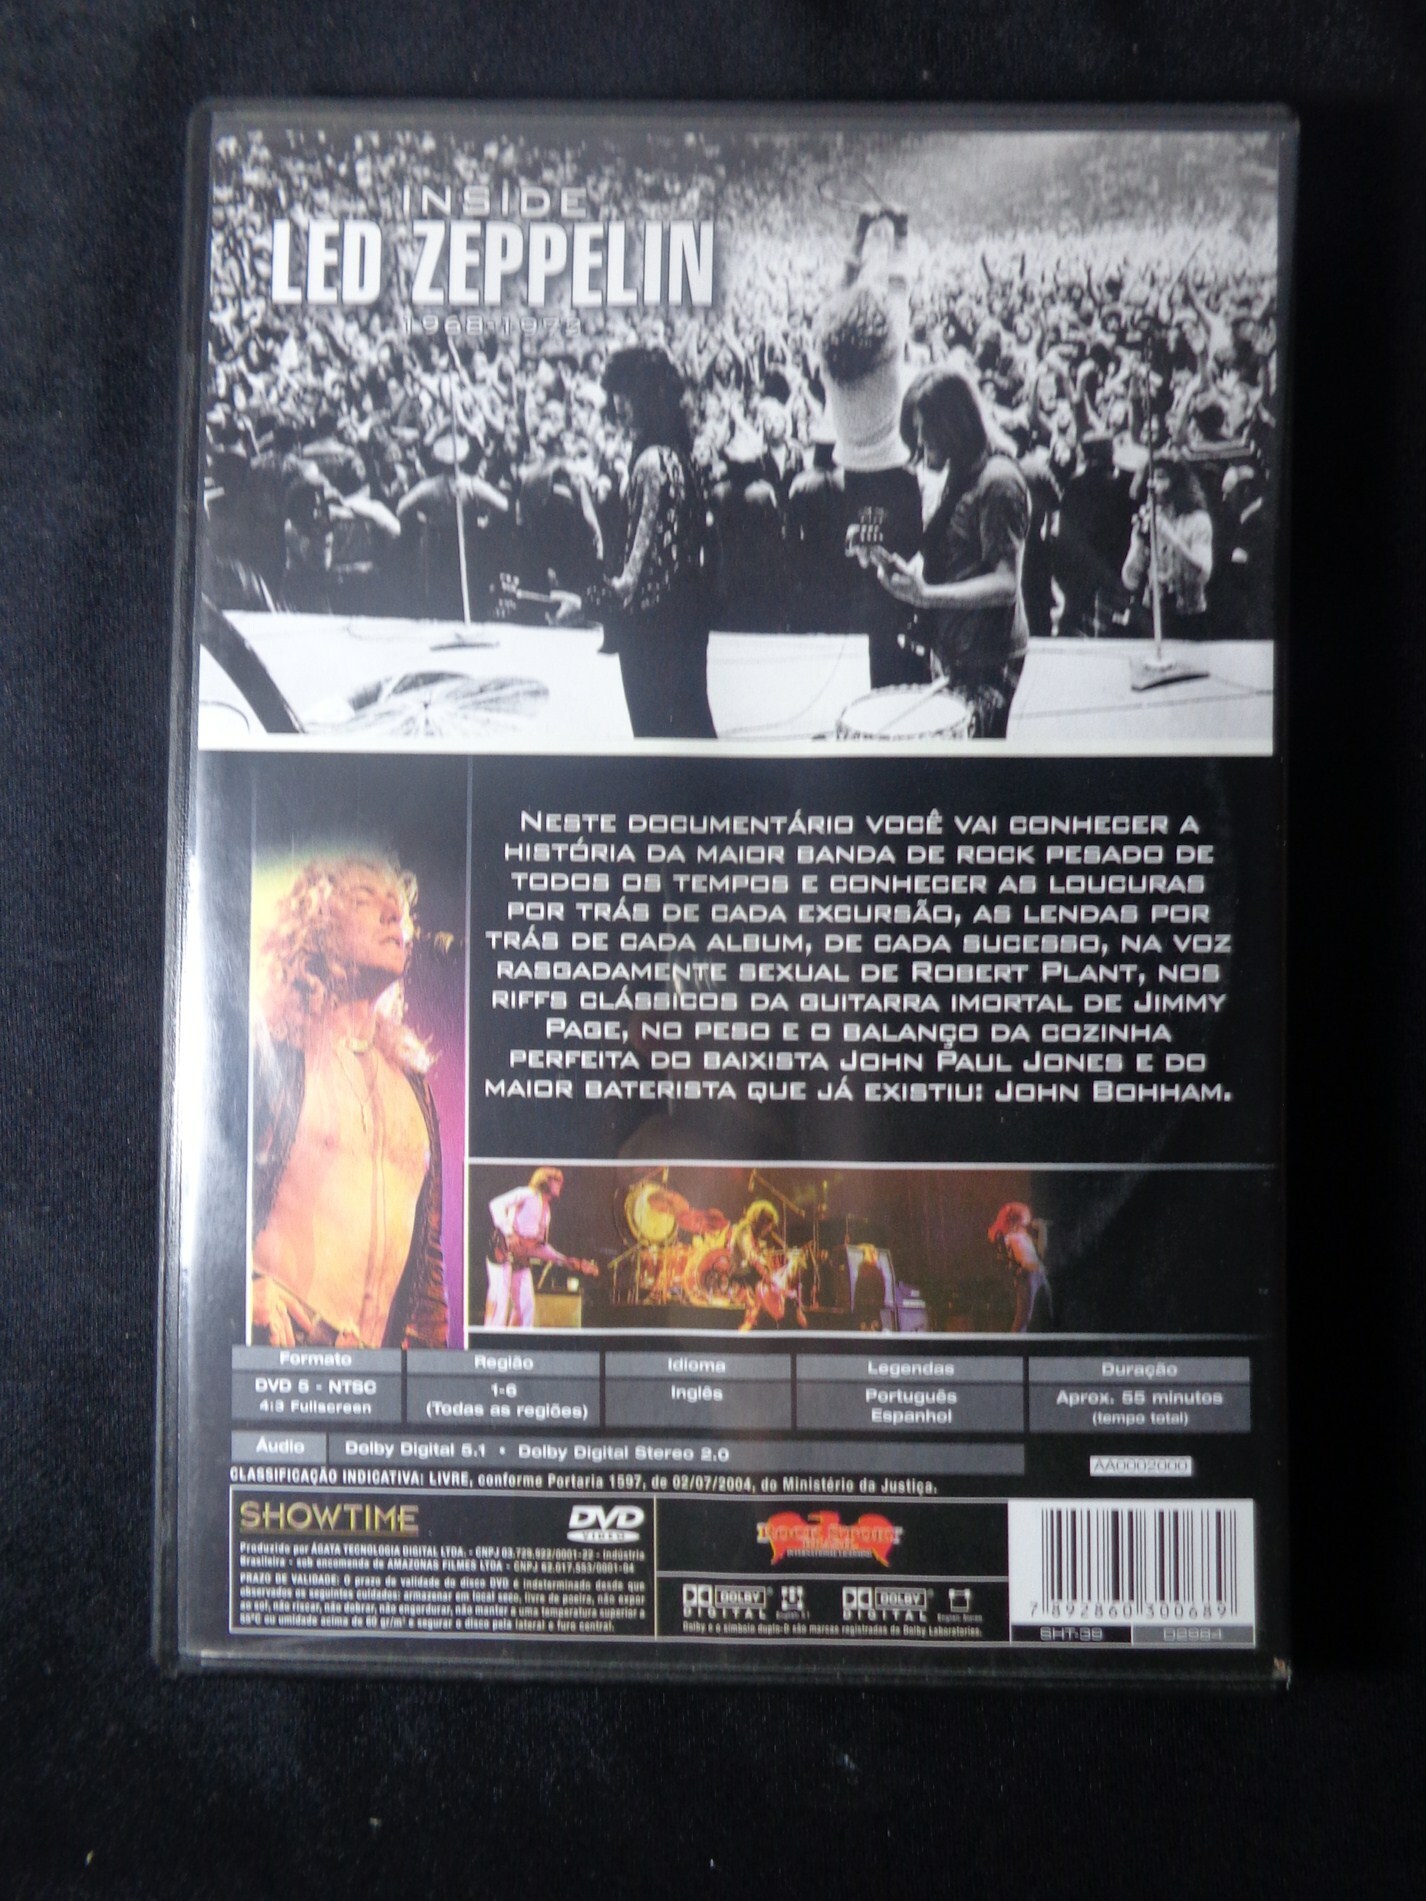 DVD - Led Zeppelin - Inside 1968-1972